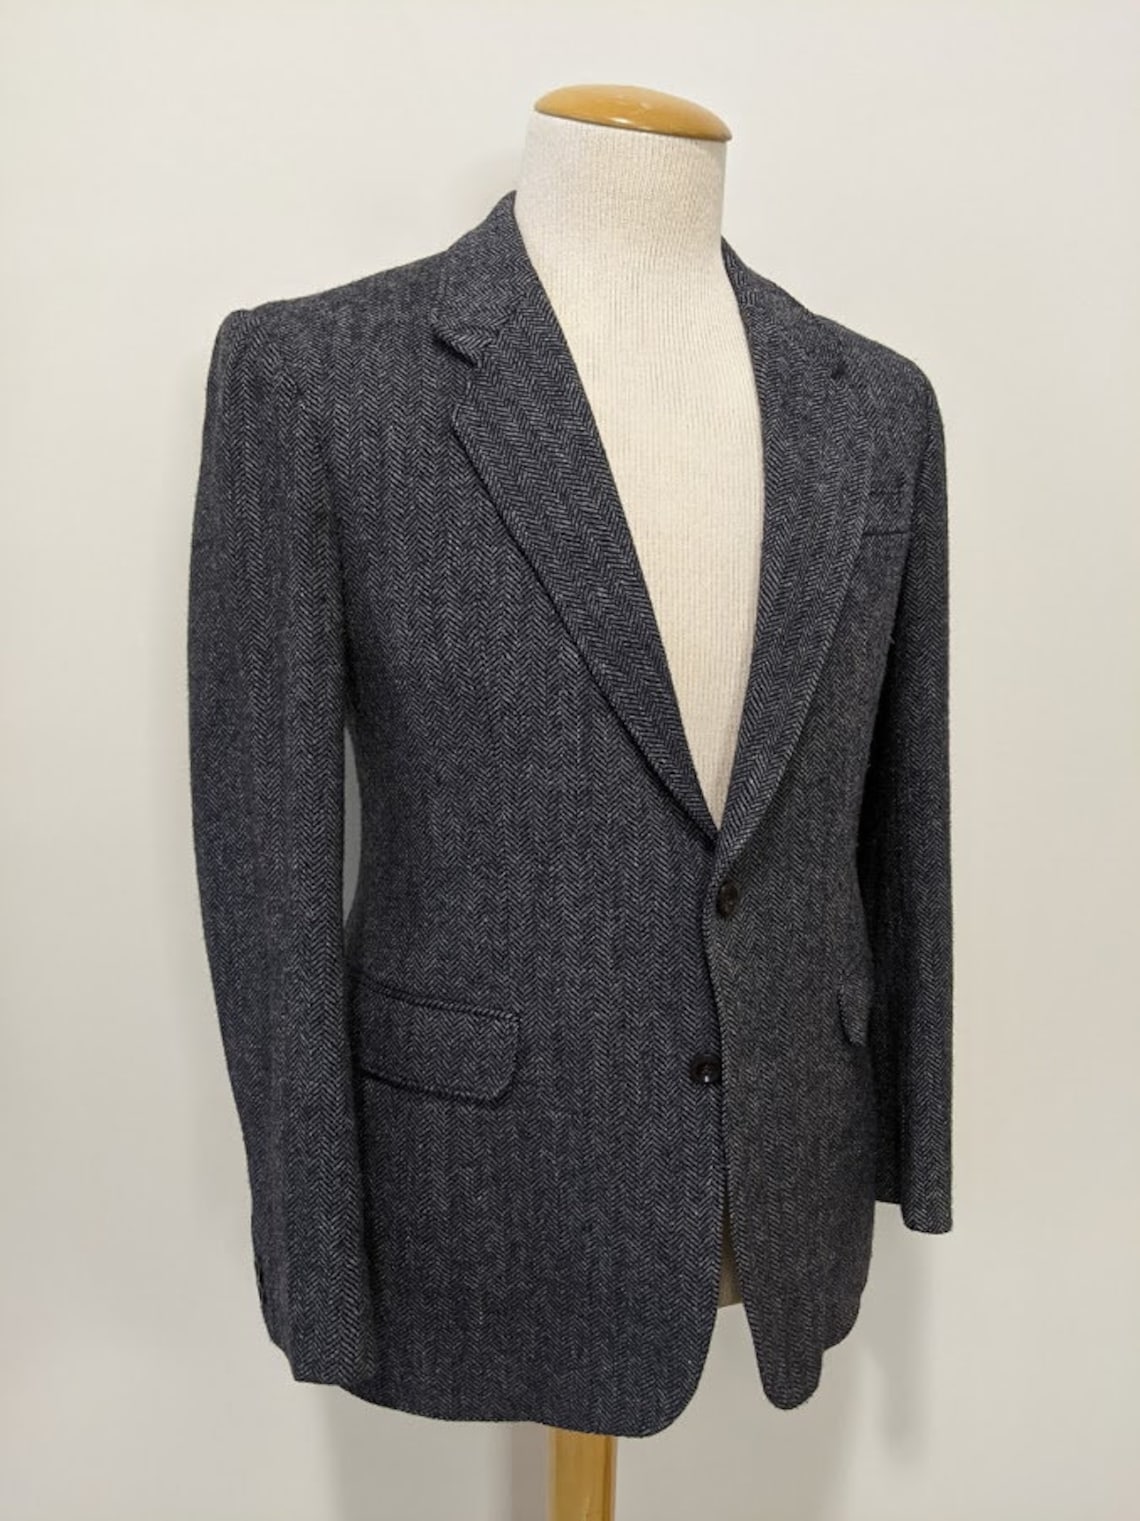 Vintage 1980's Men's Herringbone Tweed Suit Jacket | Etsy